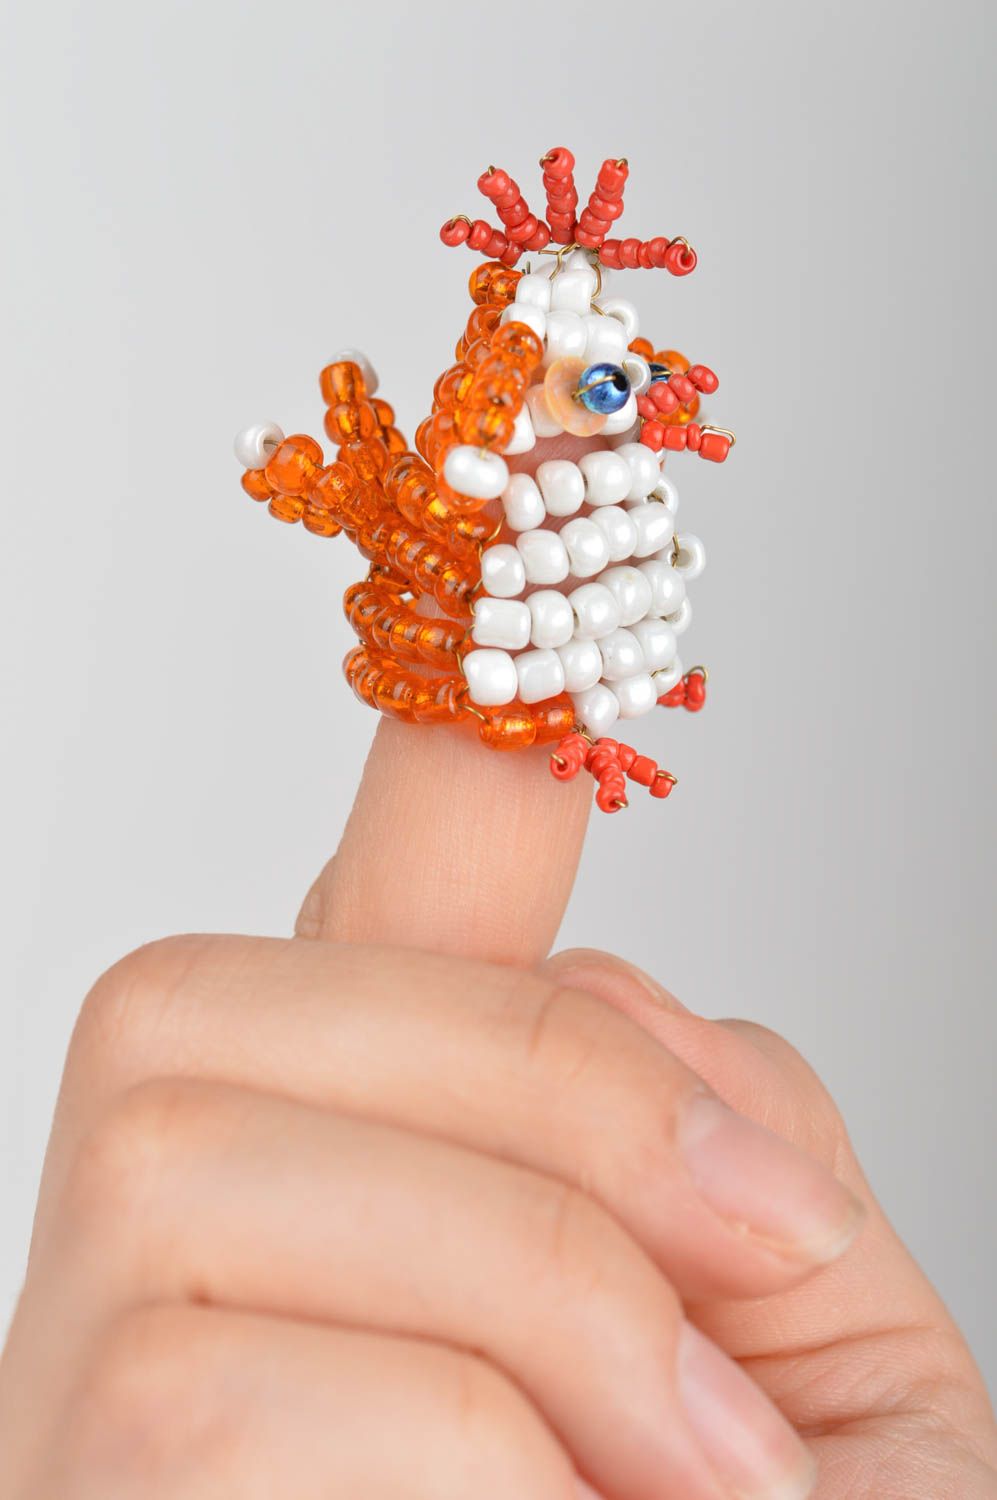 Handmade small designer bead woven animal finger puppet orange cockerel for kids photo 1